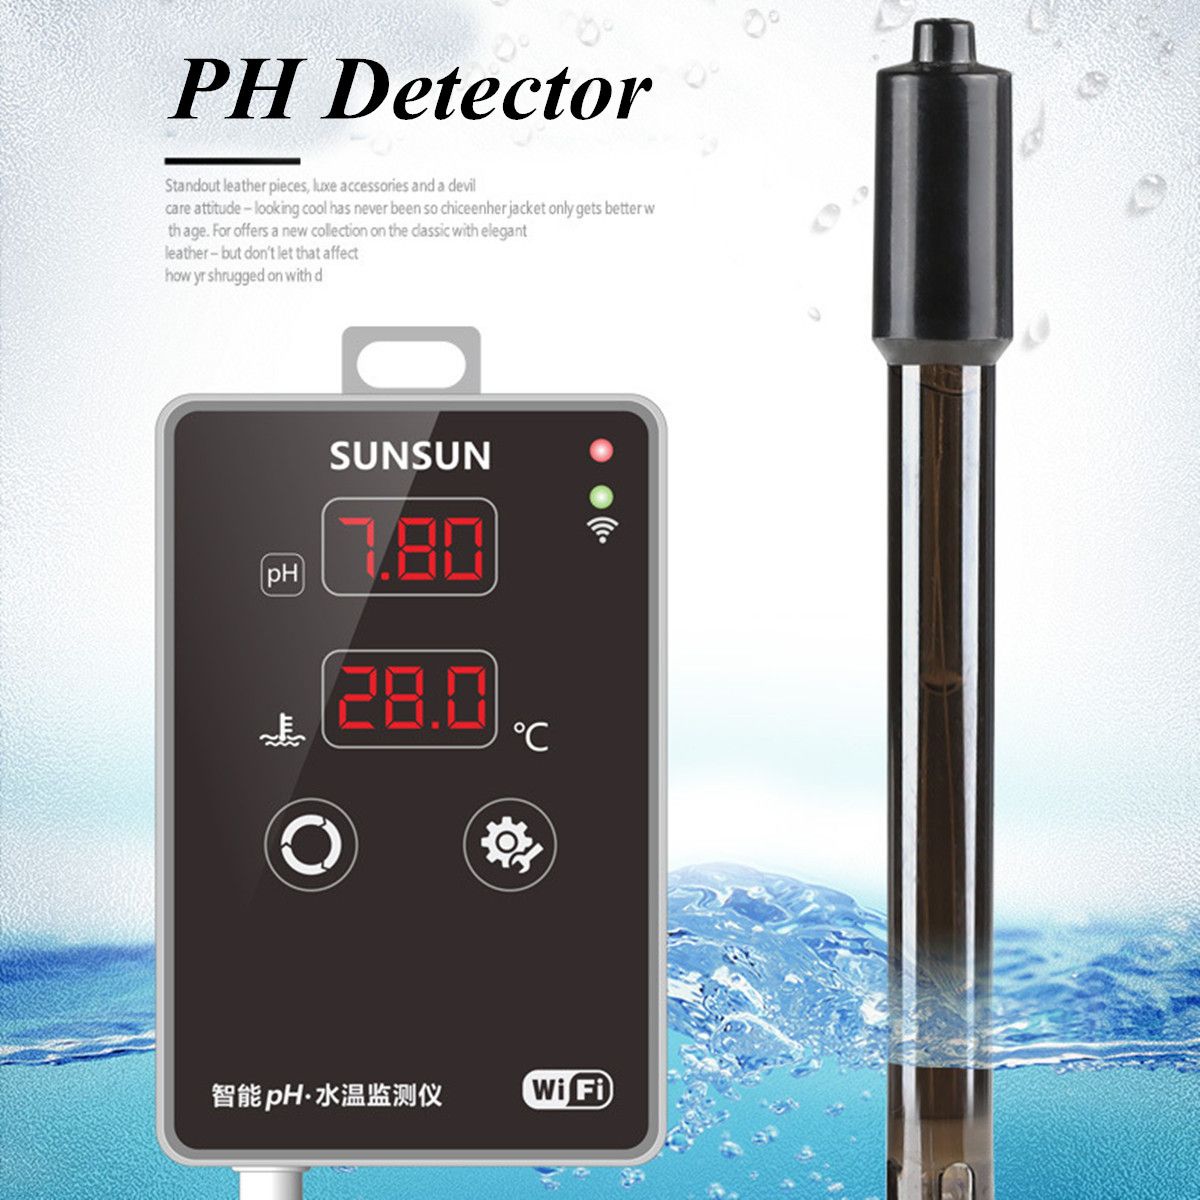 Aquarium-Digital-LCD-PH-Meter-Temperature-Tester--Pool-Fish-Tank-Water-Temperature-Detector-Thermome-1364309